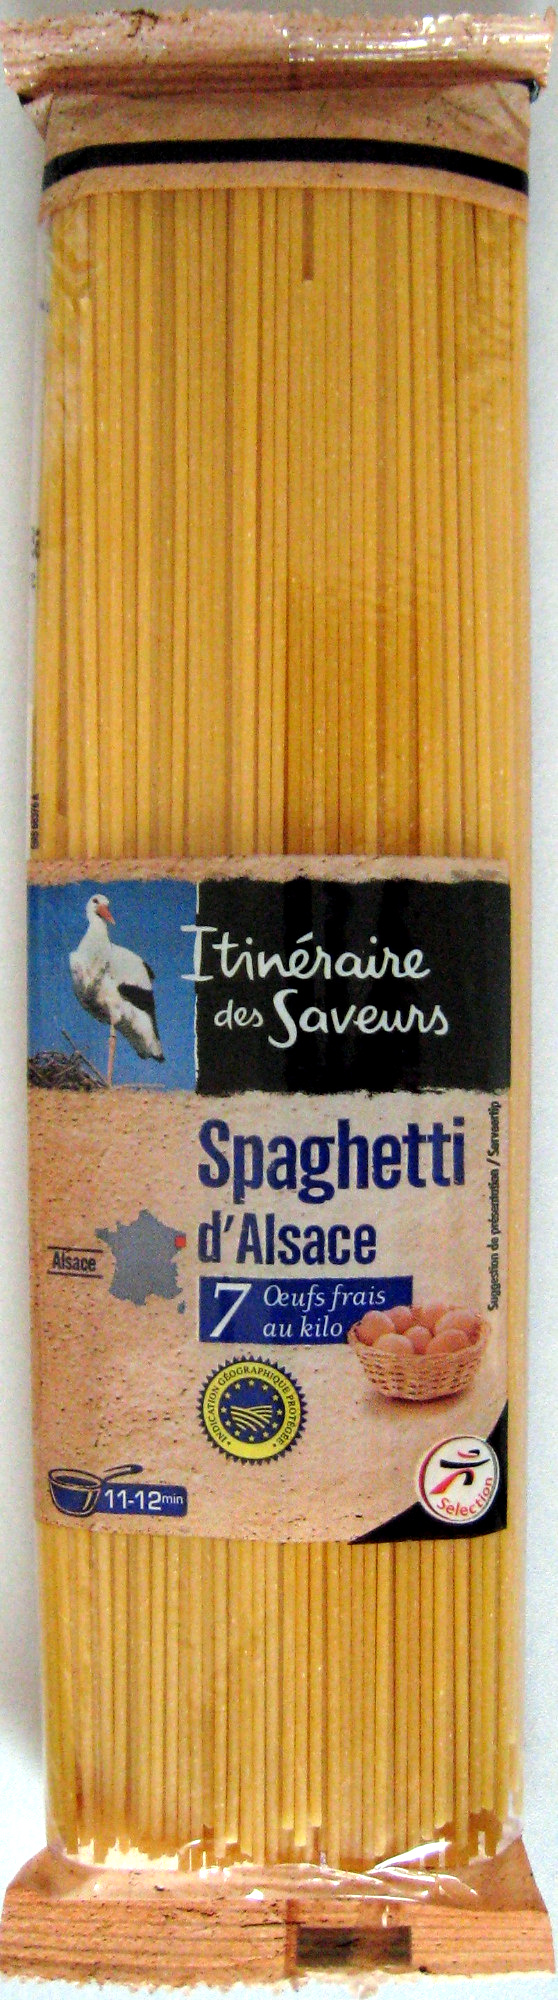 Spaghetti d'Alsace - Product - fr